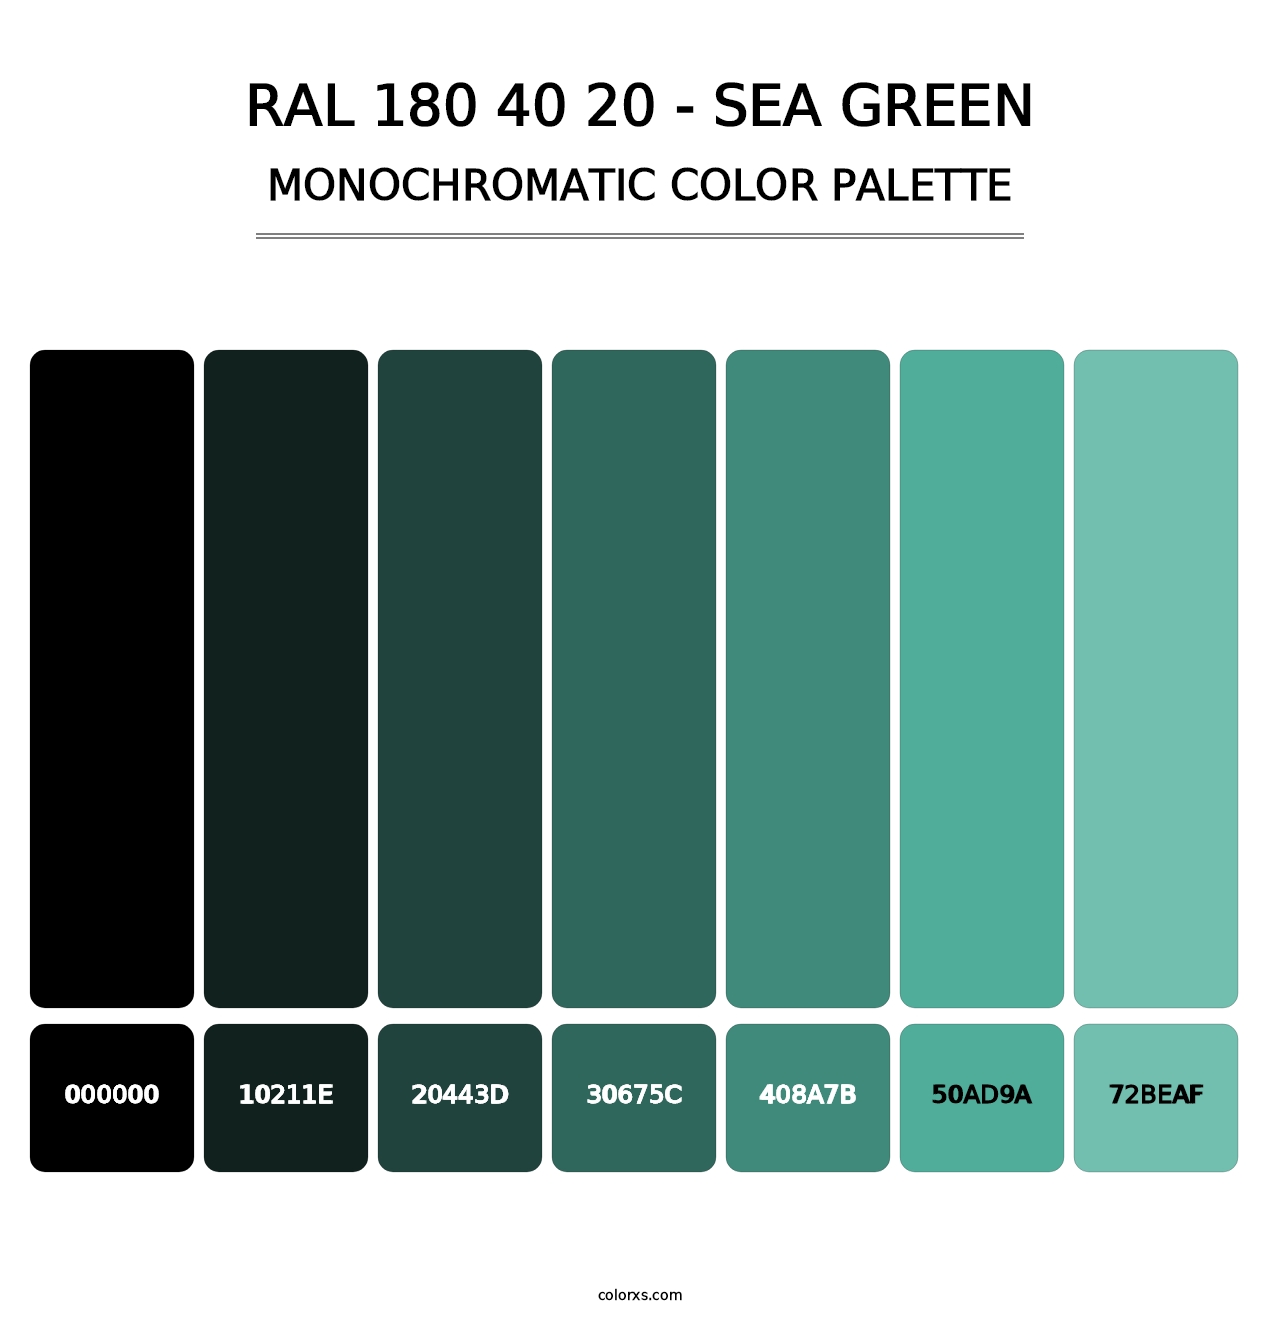 RAL 180 40 20 - Sea Green - Monochromatic Color Palette